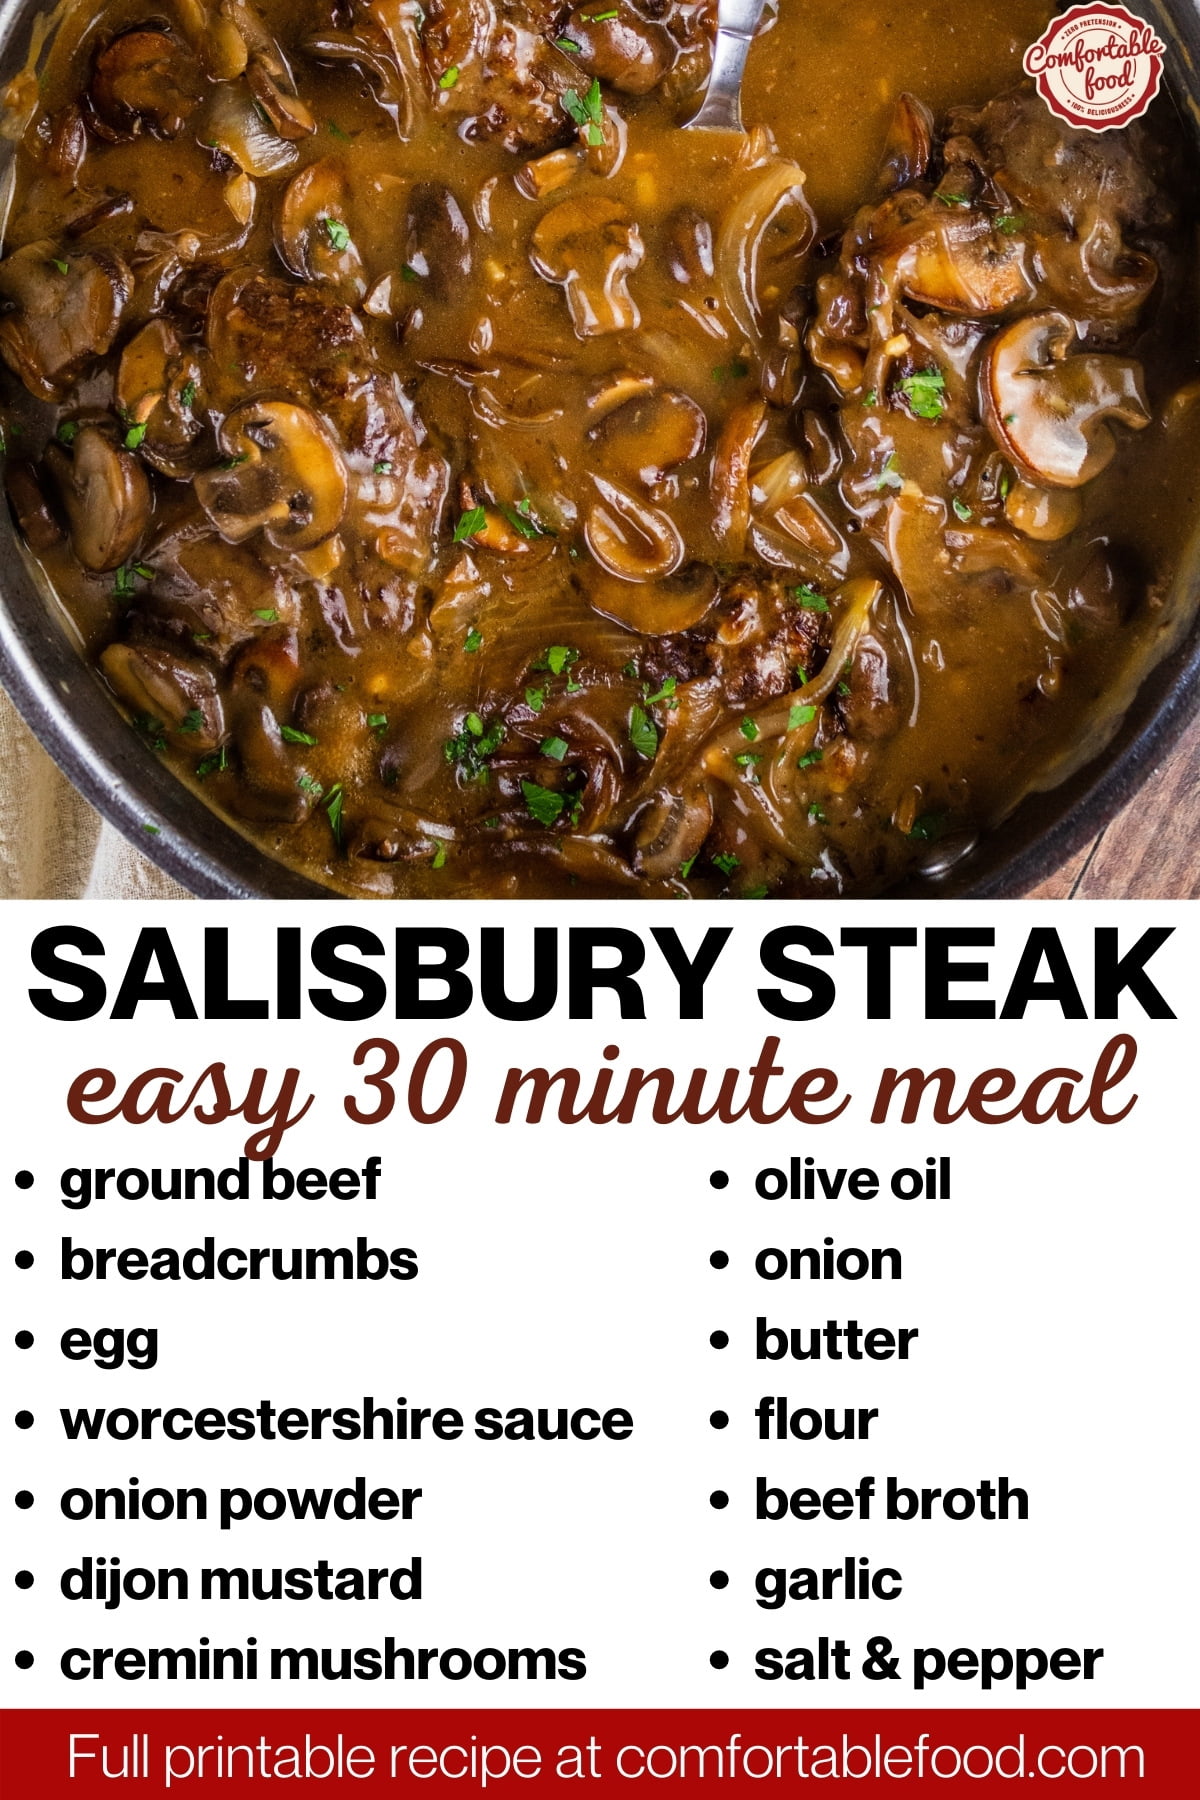 Salisbury steak socials